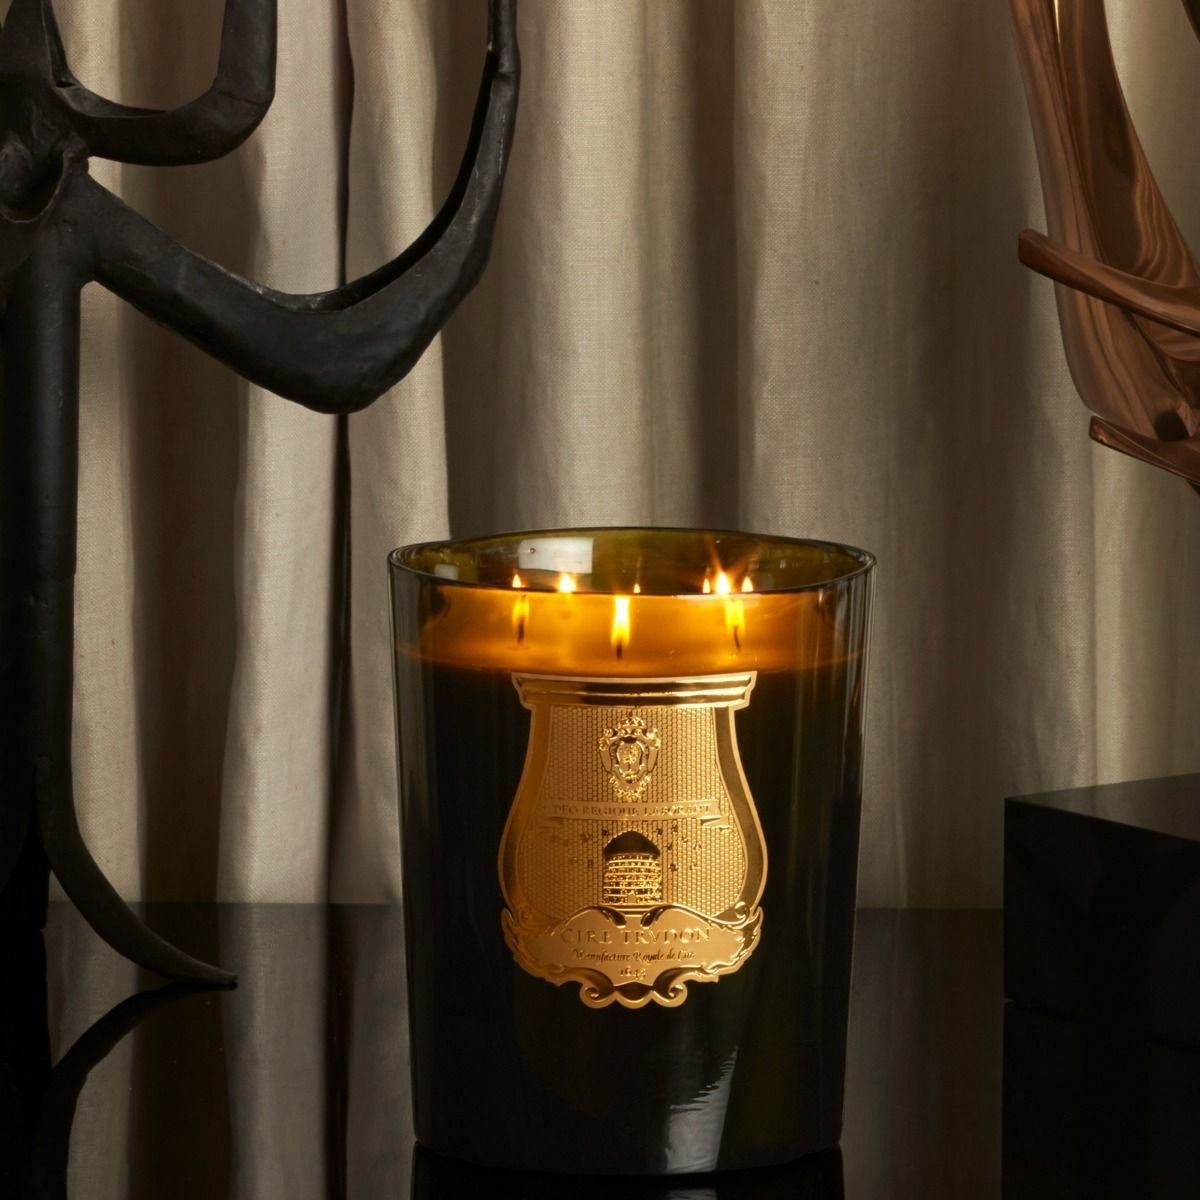 Maison Lipari Great Solis Rex Versailles Wooden Floors Scented Candle - 3kg  CIRE TRUDON.